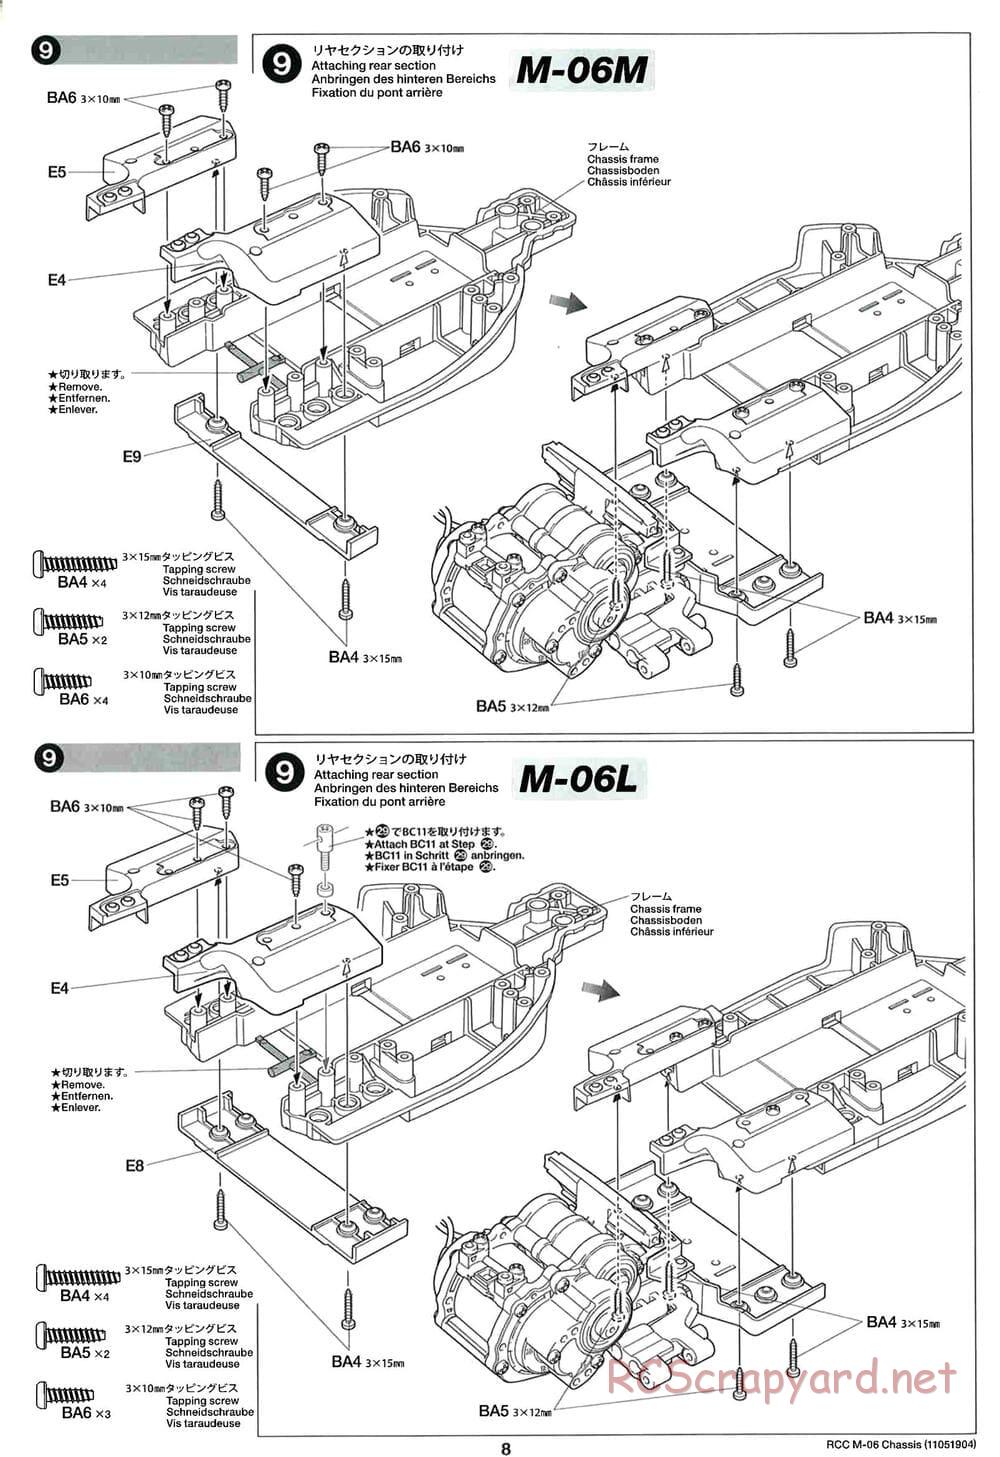 Tamiya - M-06 Chassis - Manual - Page 8